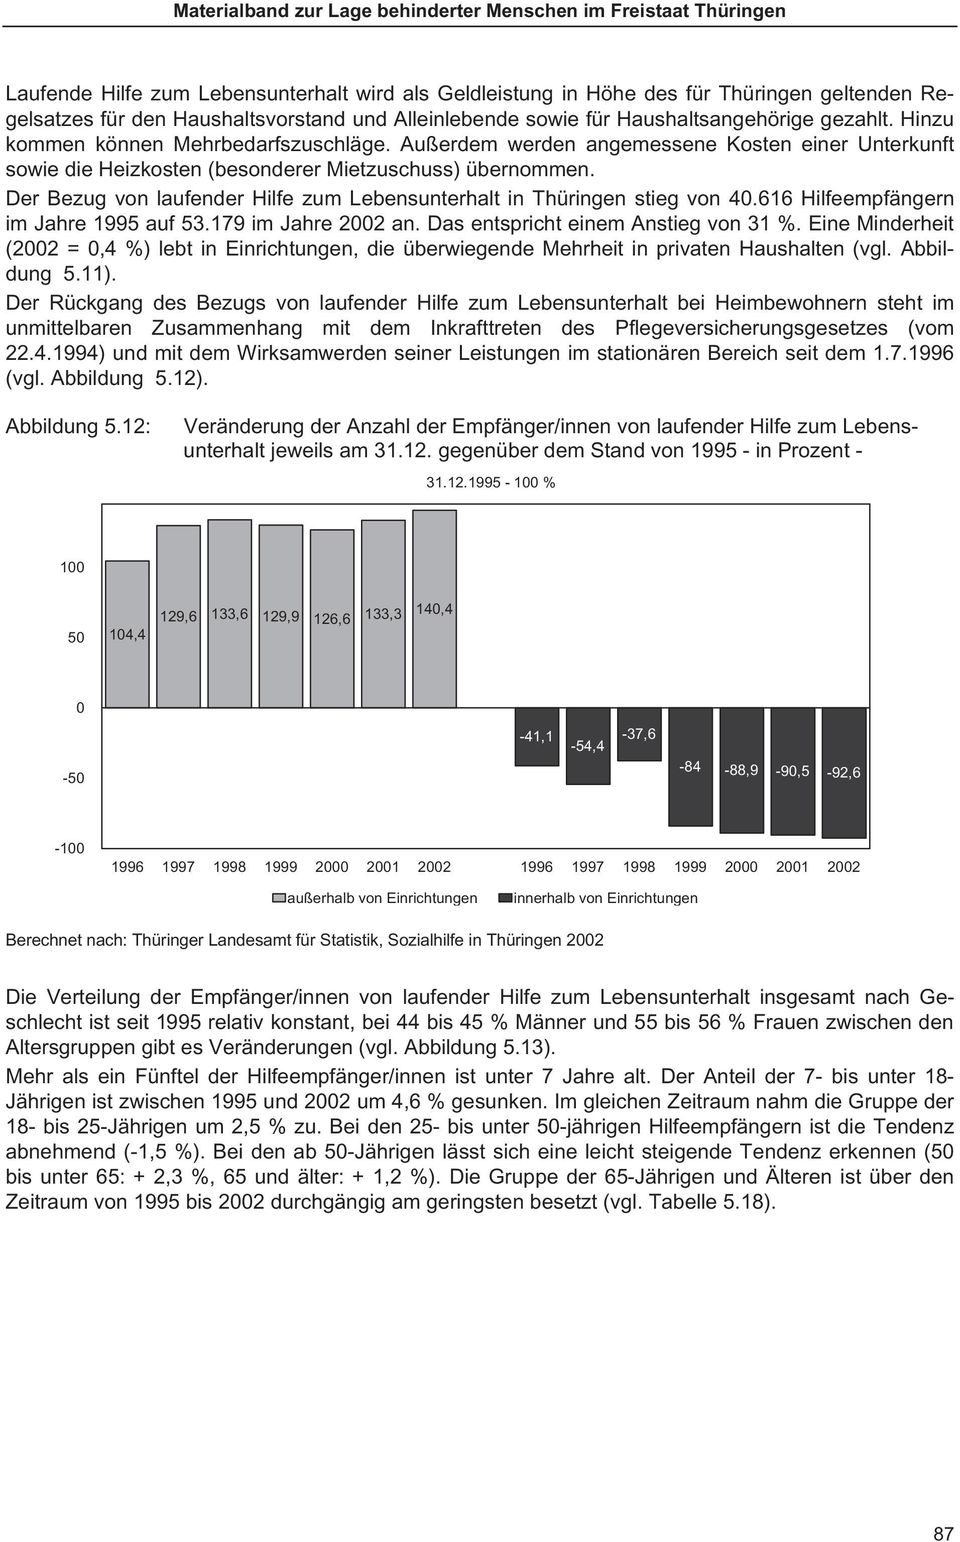 Der Bezug von laufender Hilfe zum Lebensunterhalt in Thüringen stieg von 4.616 Hilfeempfängern im Jahre 1995 auf 53.179 im Jahre 22 an. Das entspricht einem Anstieg von 31 %.